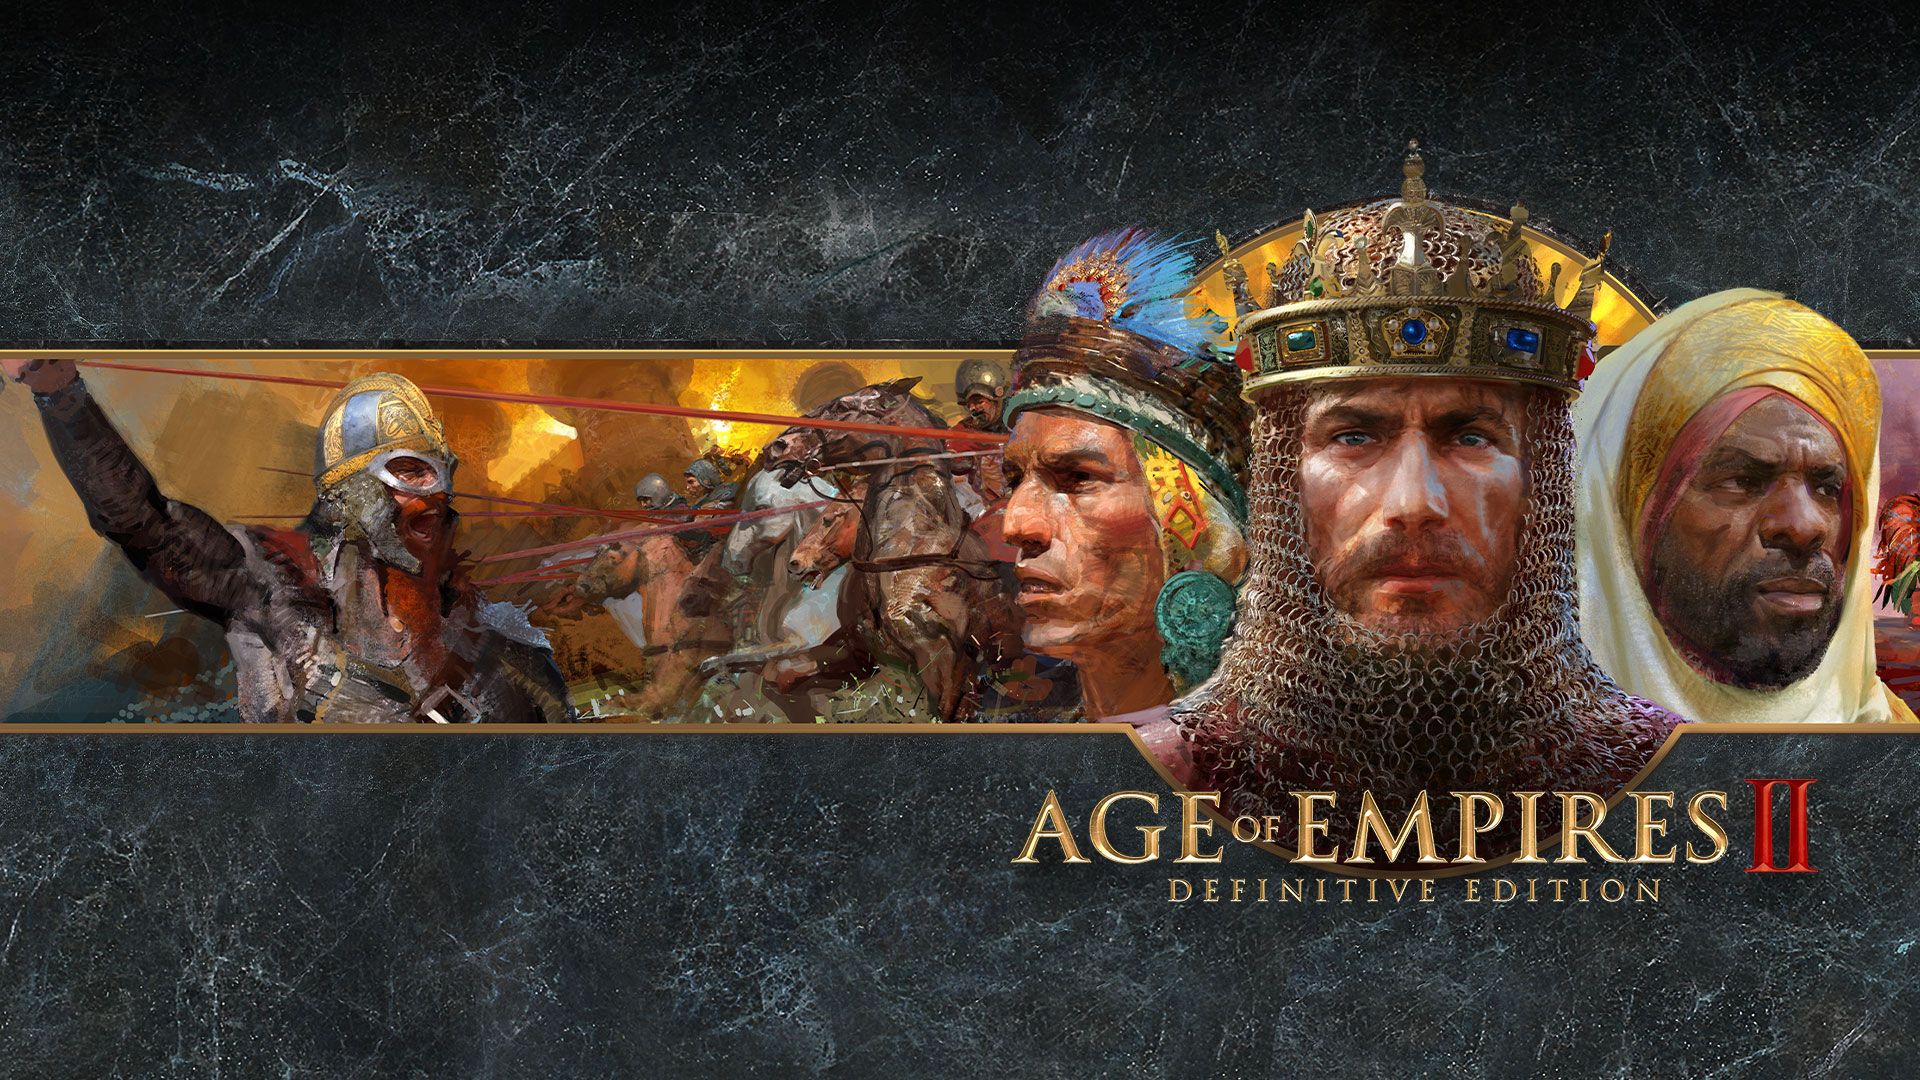 Logotipo do Age of Empires II Definitive Edition com representações artísticas de facções em guerra